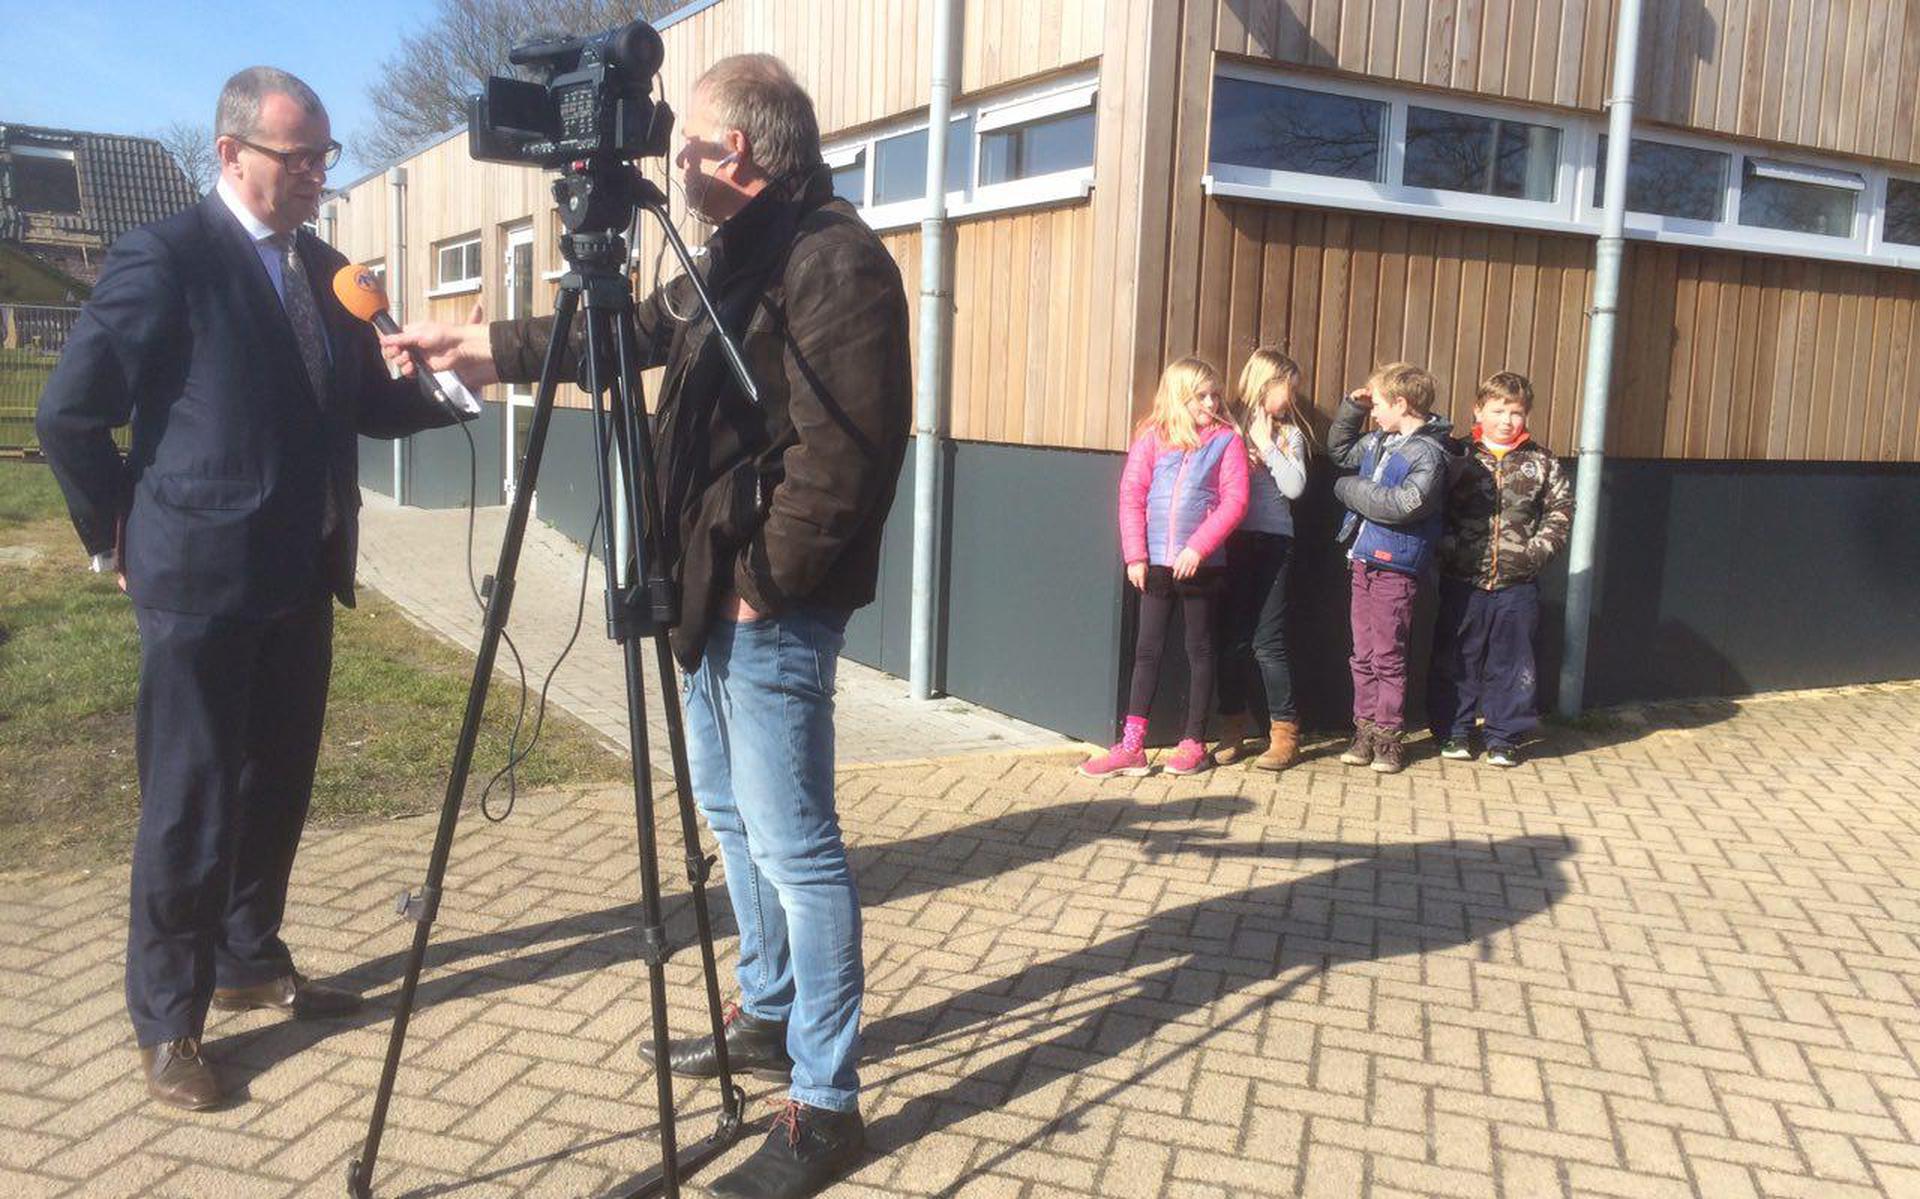 Nationaal Coördinator Hans Alders wordt geïnterviewd onder toeziend oog van enkele kinderen. FOTO GERDT VAN HOFSLOT